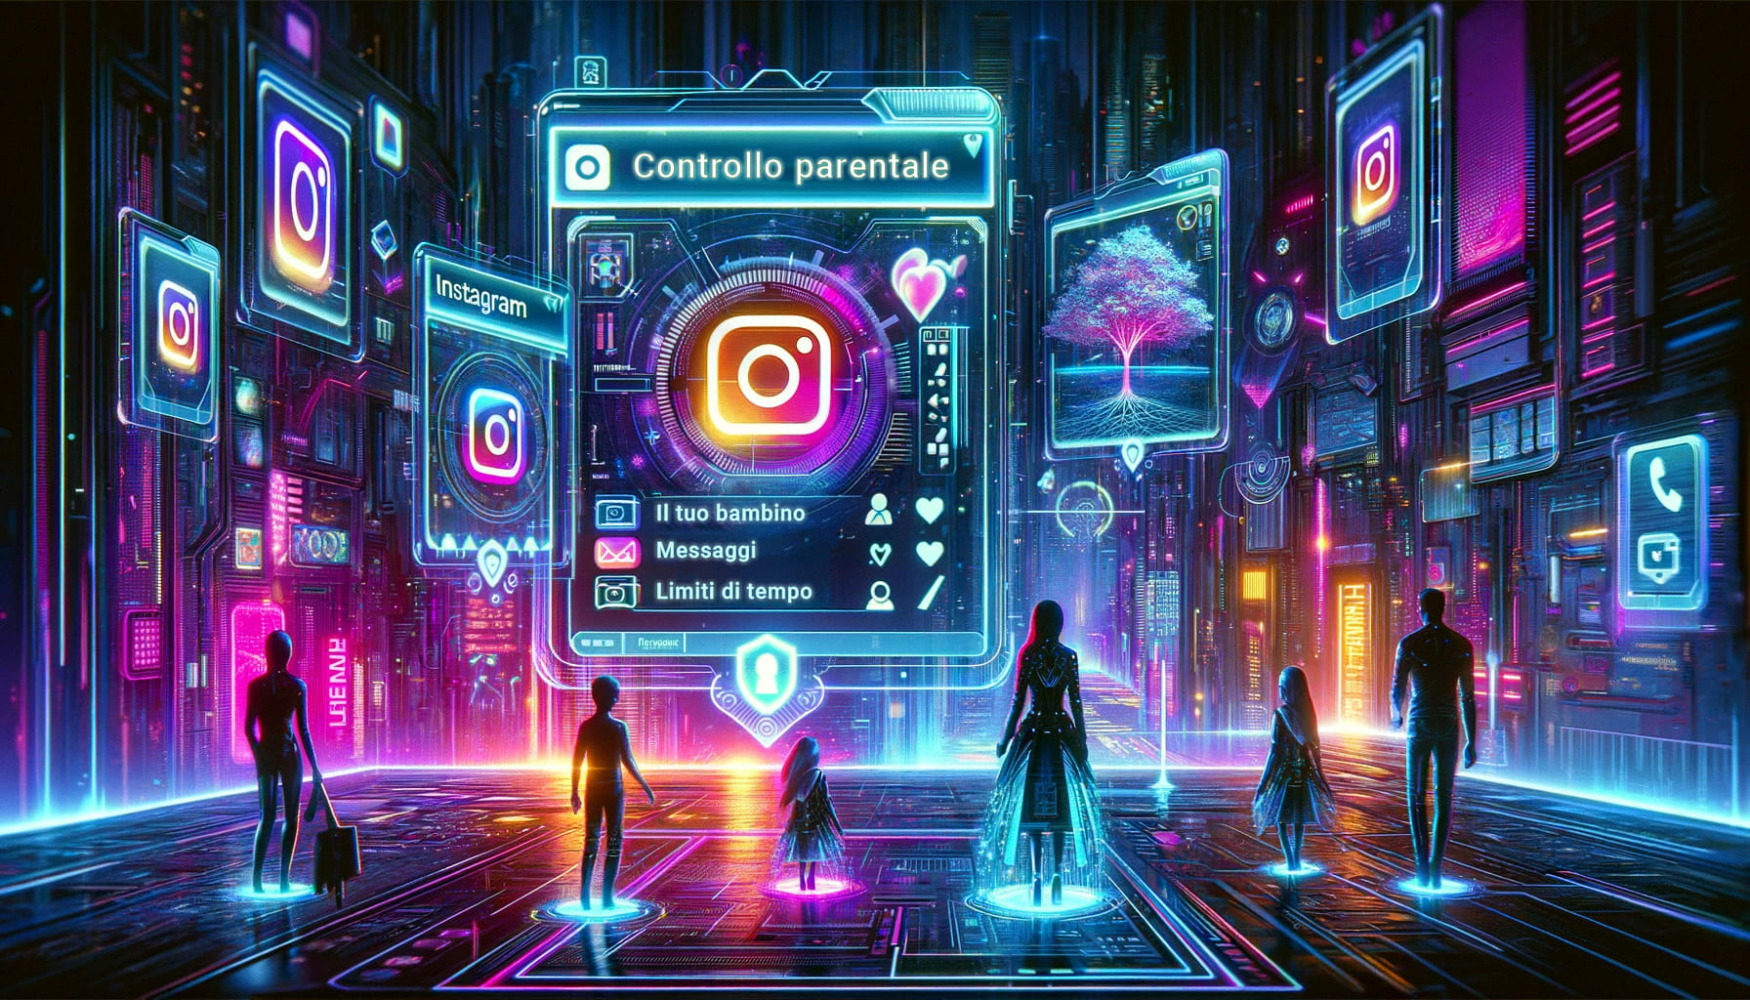 Tre adulti e tre bambini in piedi nell'ecosistema di instagram davanti a grandi schermi luminosi con i loghi di instagram e il più grande che rivela informazioni sui controlli parentali